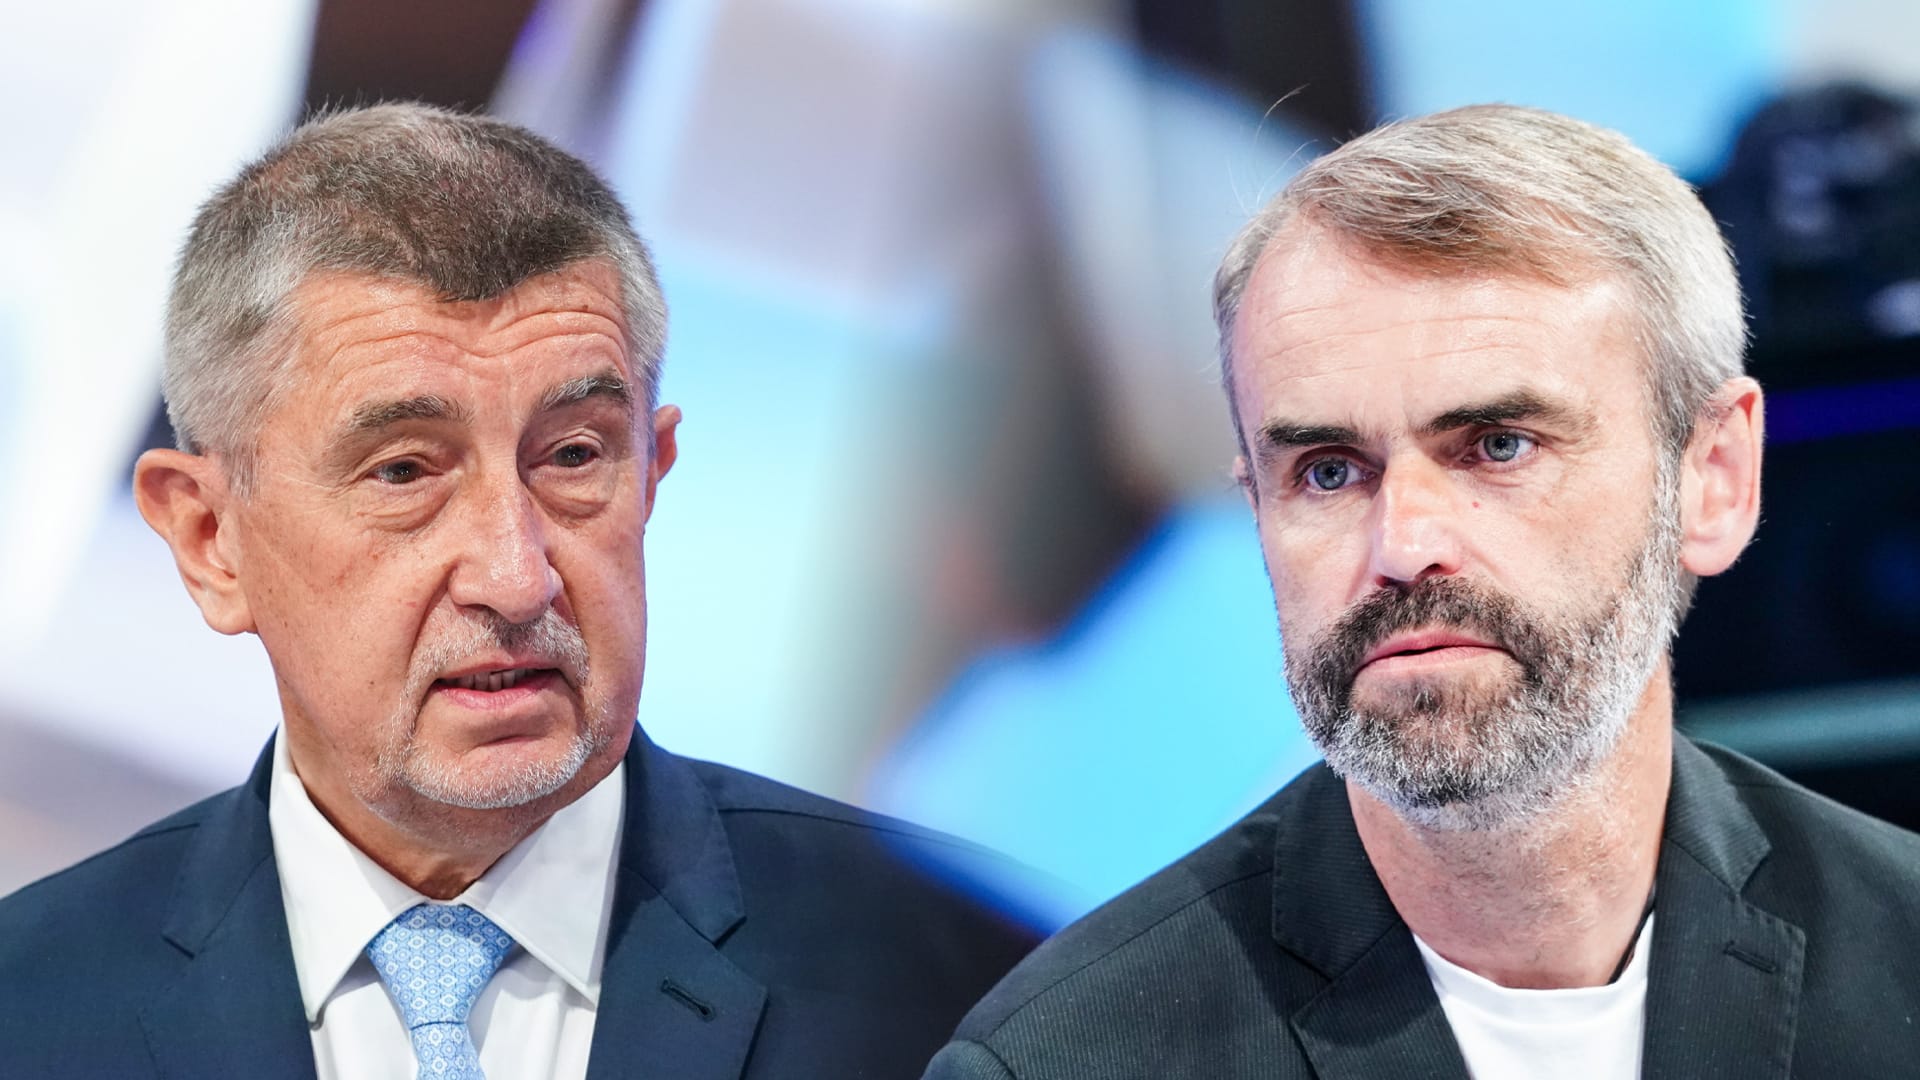 Robert Šlachta (vpravo) využívá podobný styl komunikace na sociálních sítích jako premiér Andrej Babiš (vlevo).